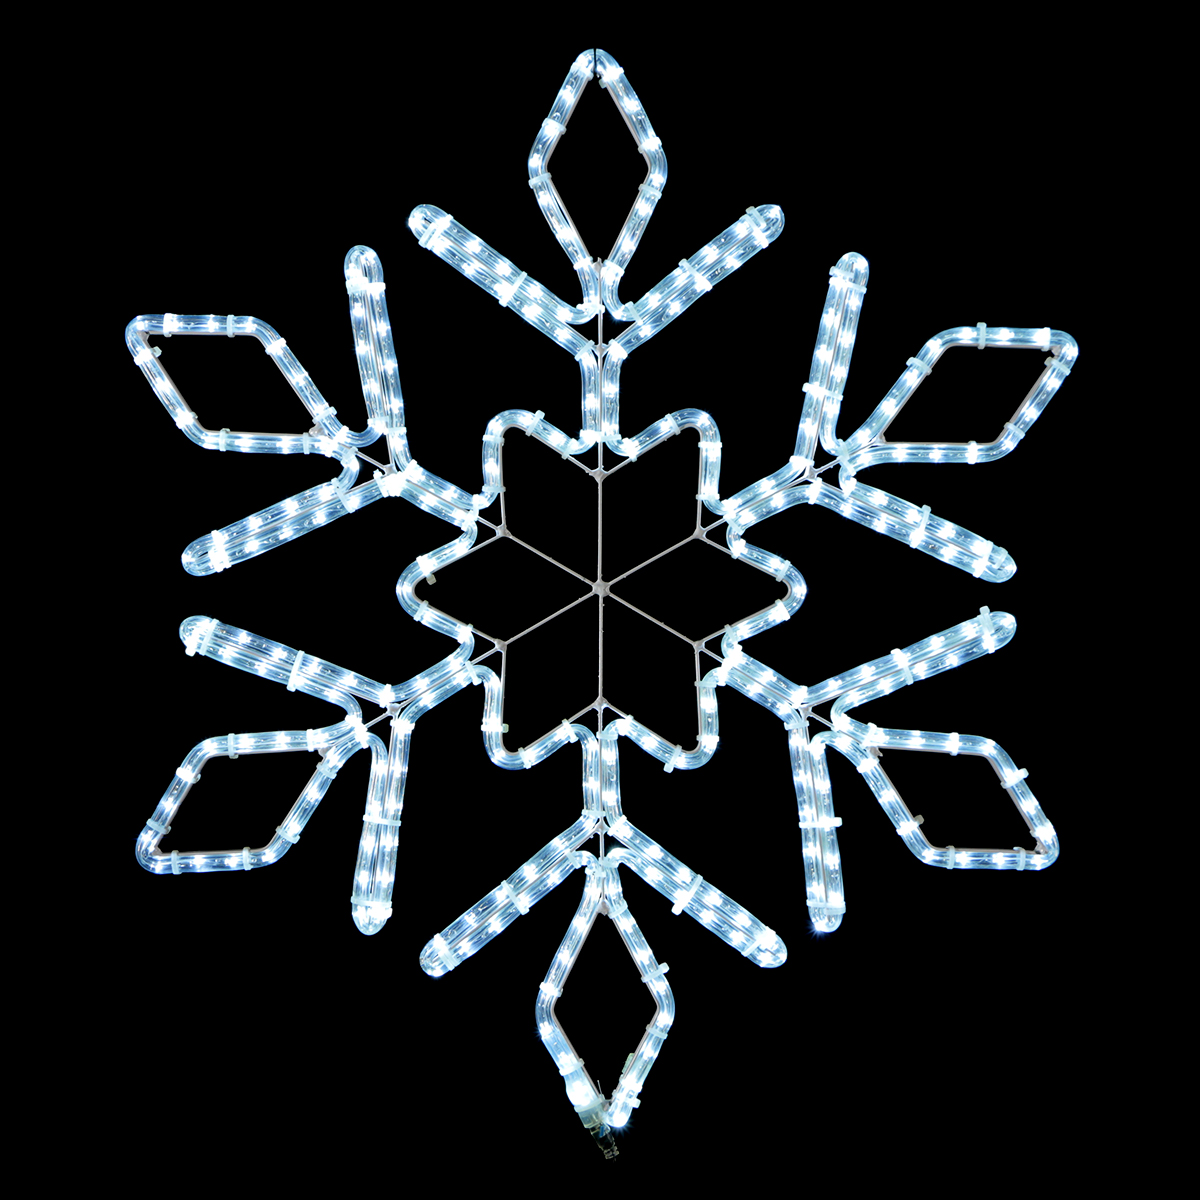 Светодиодная Снежинка Ø0,8м Белая, Дюралайт на Металлическом Каркасе, IP54